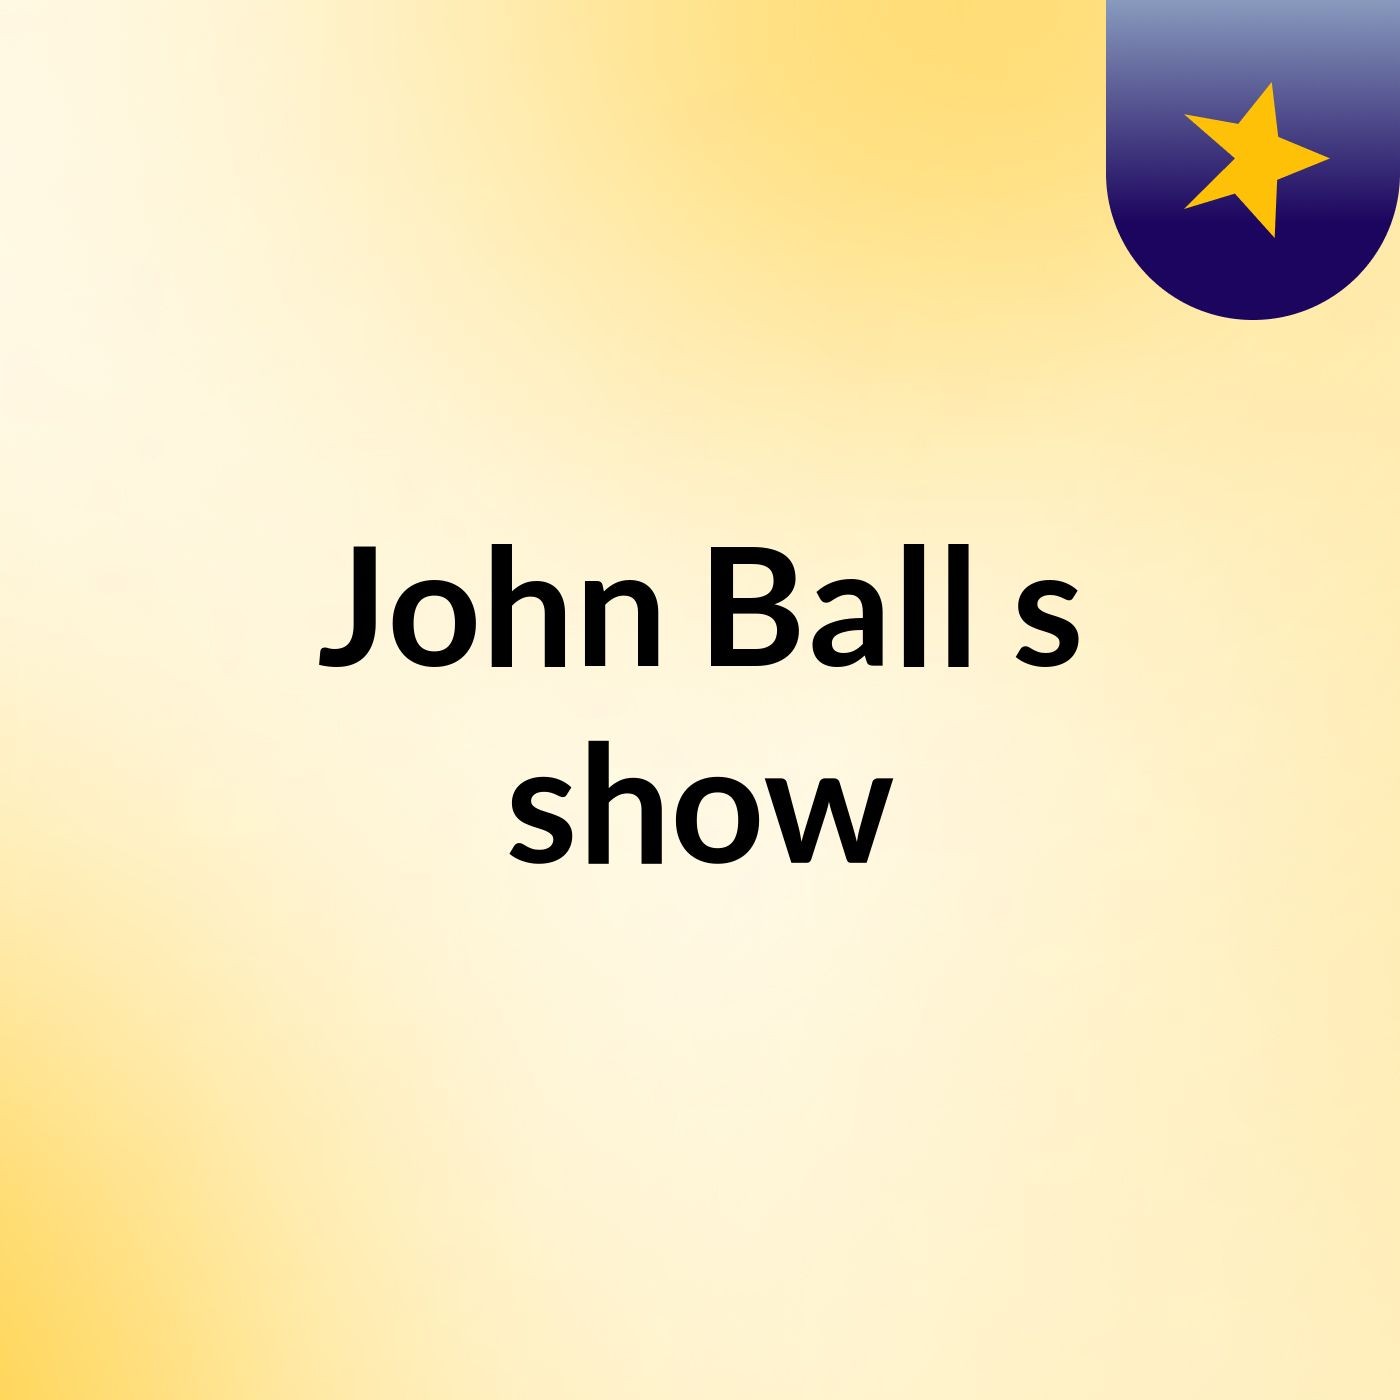 John Ball's show